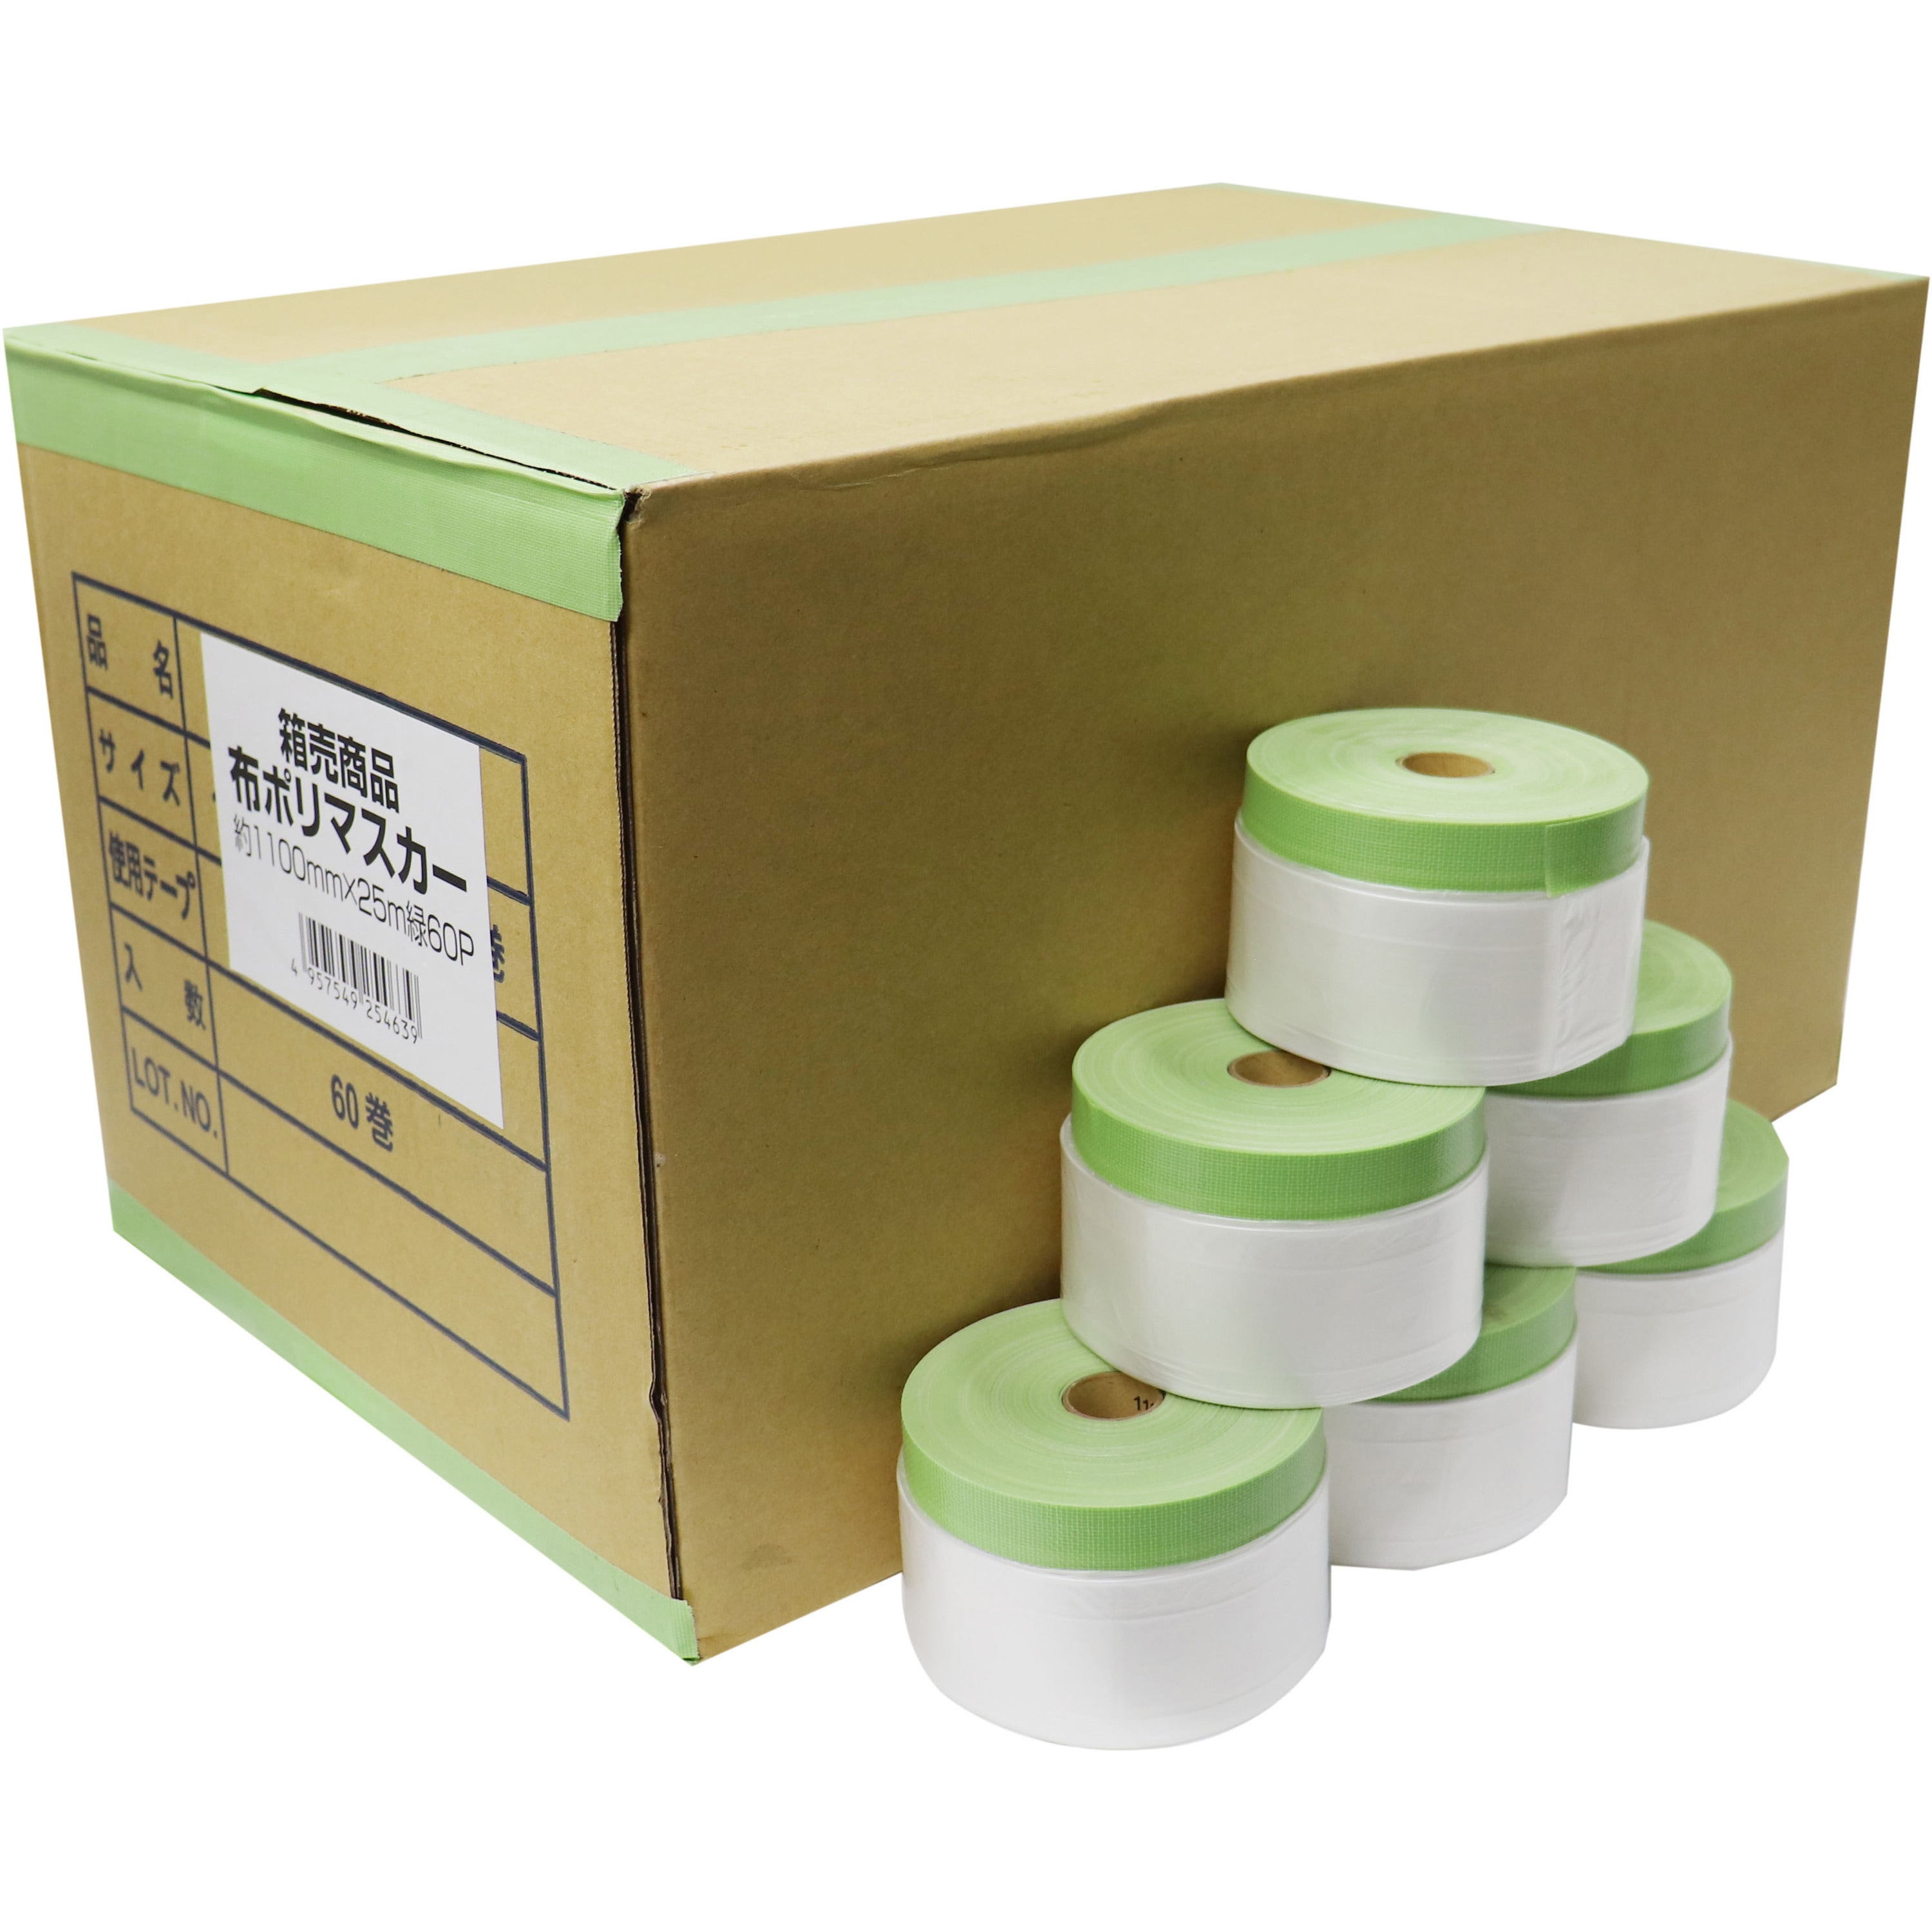 テープ/マスキングテープ布コロナ マスカー 1100 60巻 - テープ 